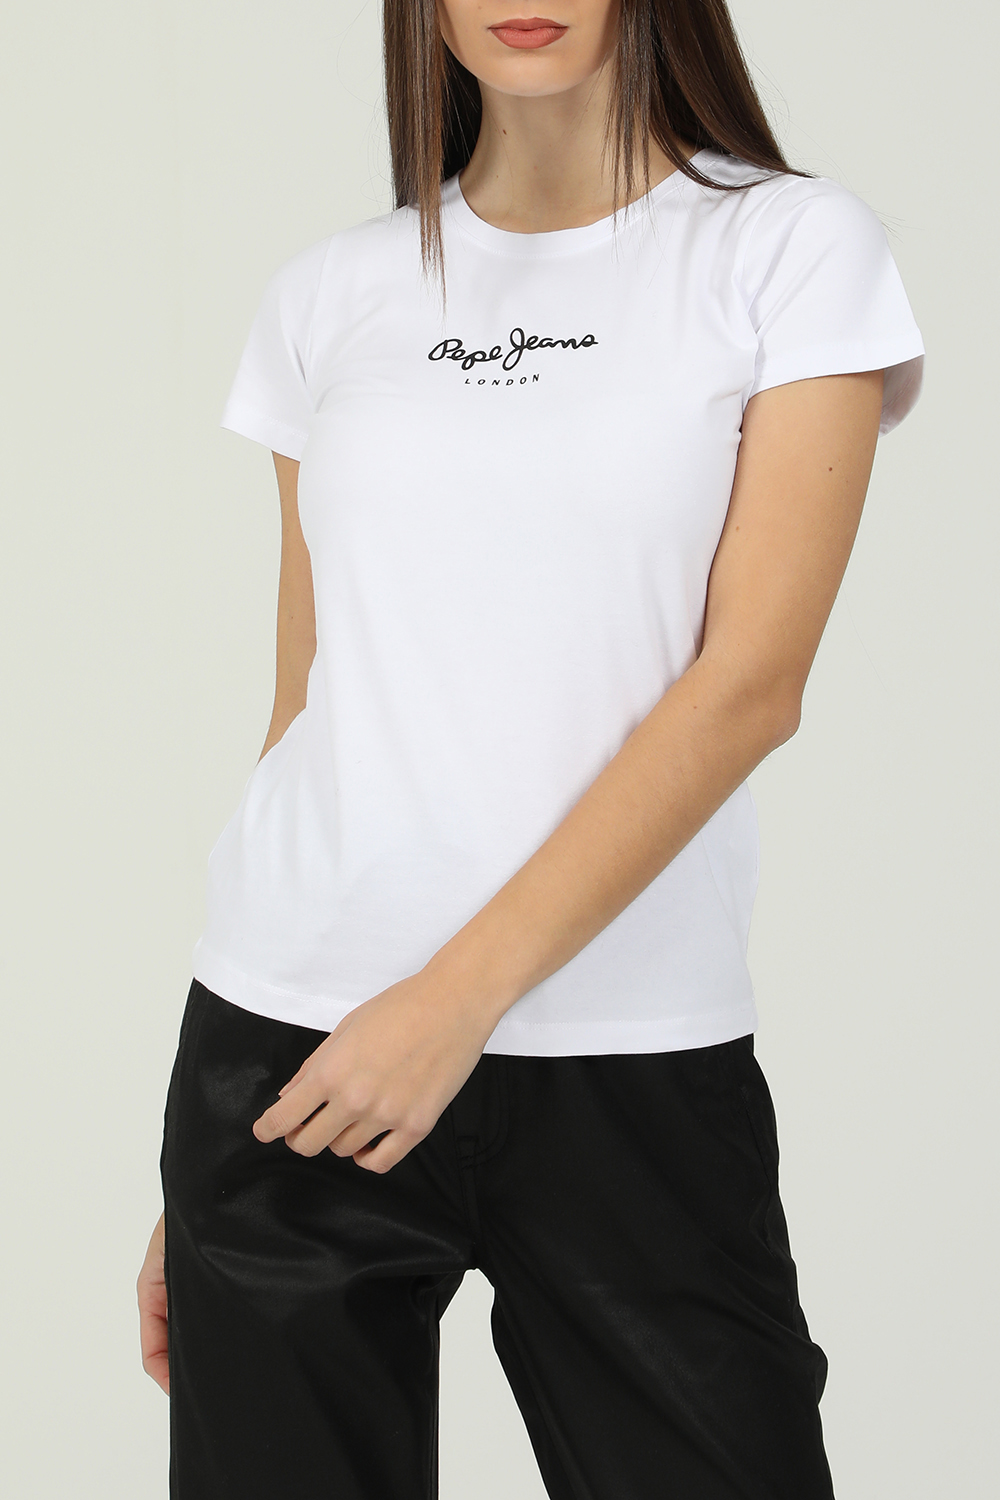 PEPE JEANS – Γυναικεια κοντομανικη μπλουζα PEPE JEANS NEW VIRGINIA λευκη